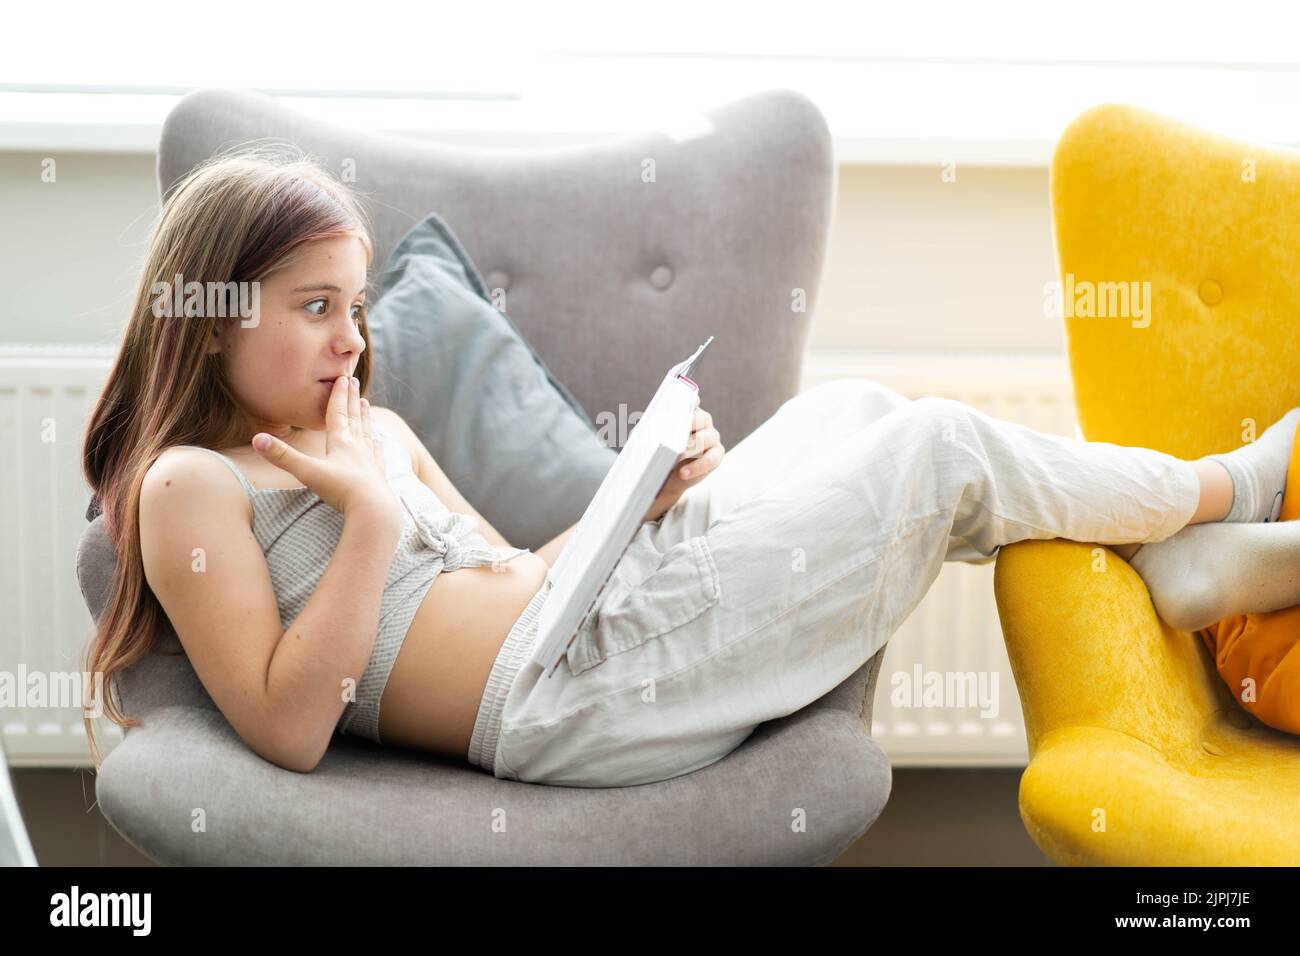 Retrato de una niña caucásica acostada en un sillón gris con un libro en las manos. La chica se ríe y se sorprende. El concepto de recreación en el hogar, aprendizaje, lectura. Foto de stock